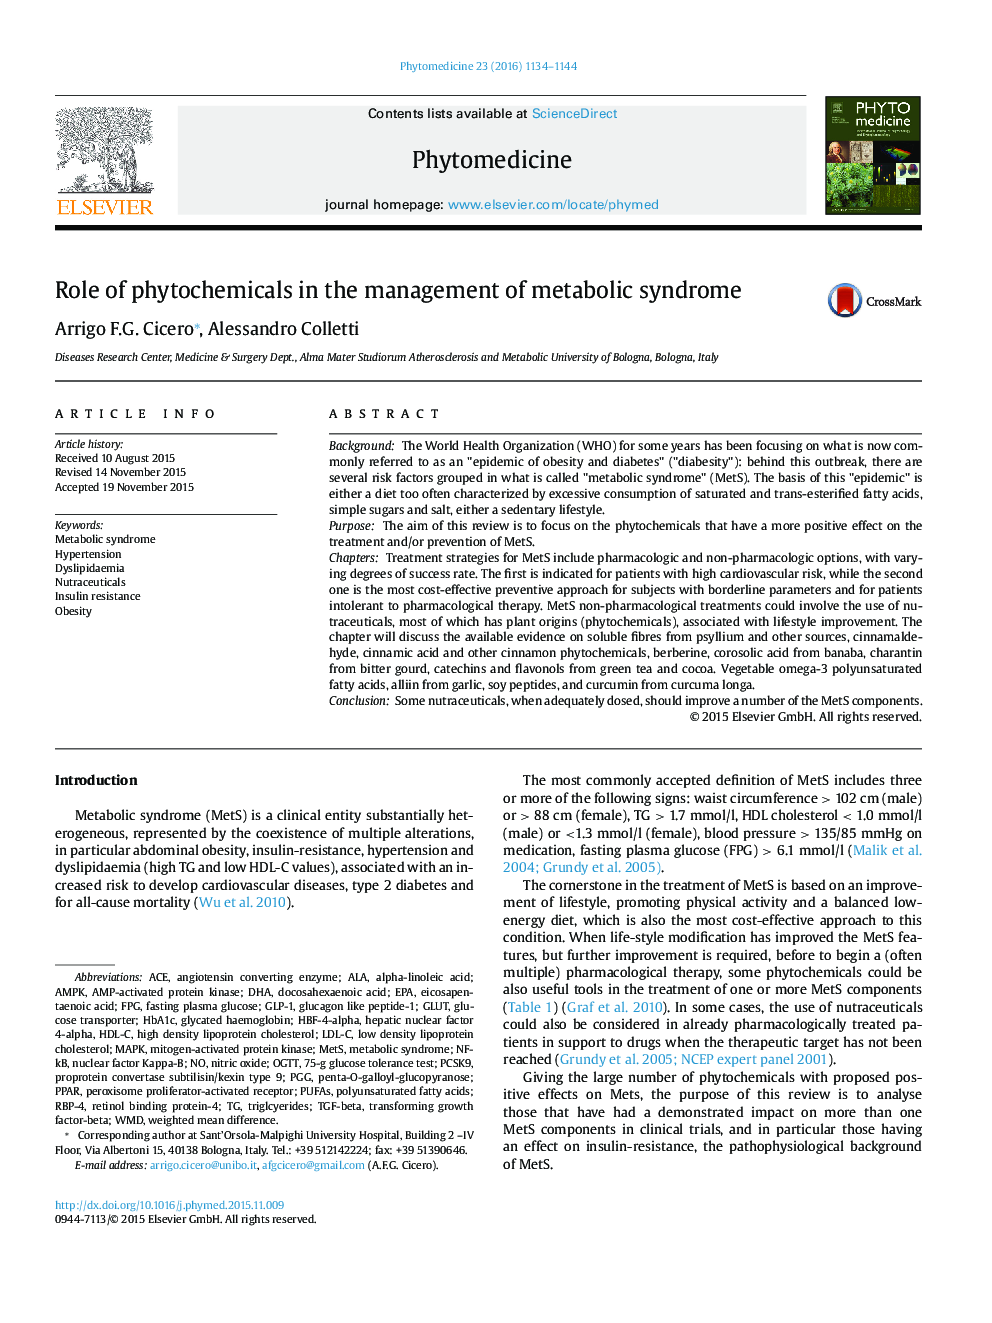 نقش مواد شیمیایی گیاهی در مدیریت سندرم متابولیک